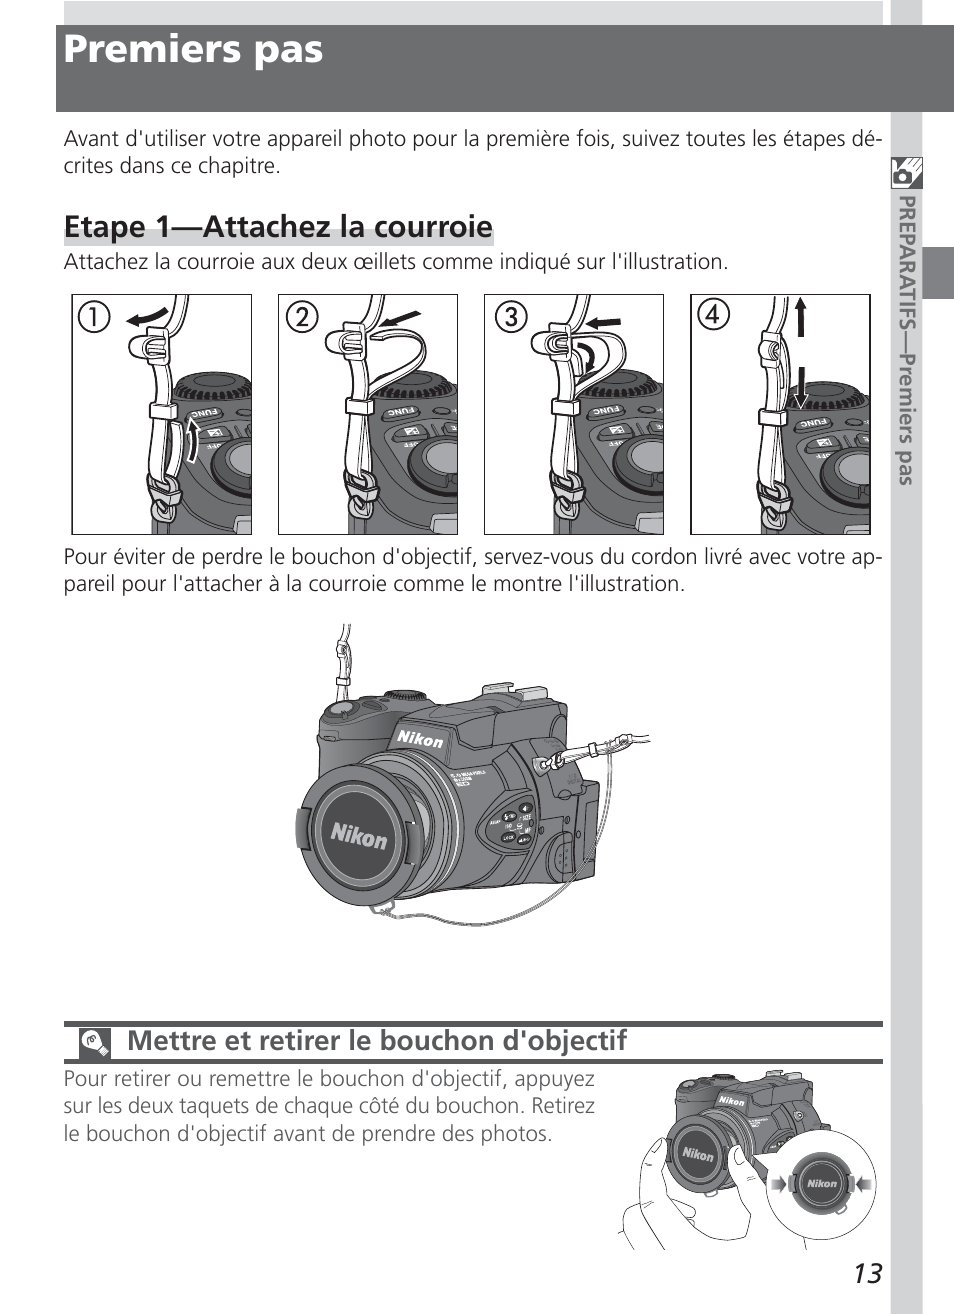 Premiers pas, Etape 1—attachez la courroie | Nikon Coolpix 5700 Manuel d'utilisation | Page 25 / 192